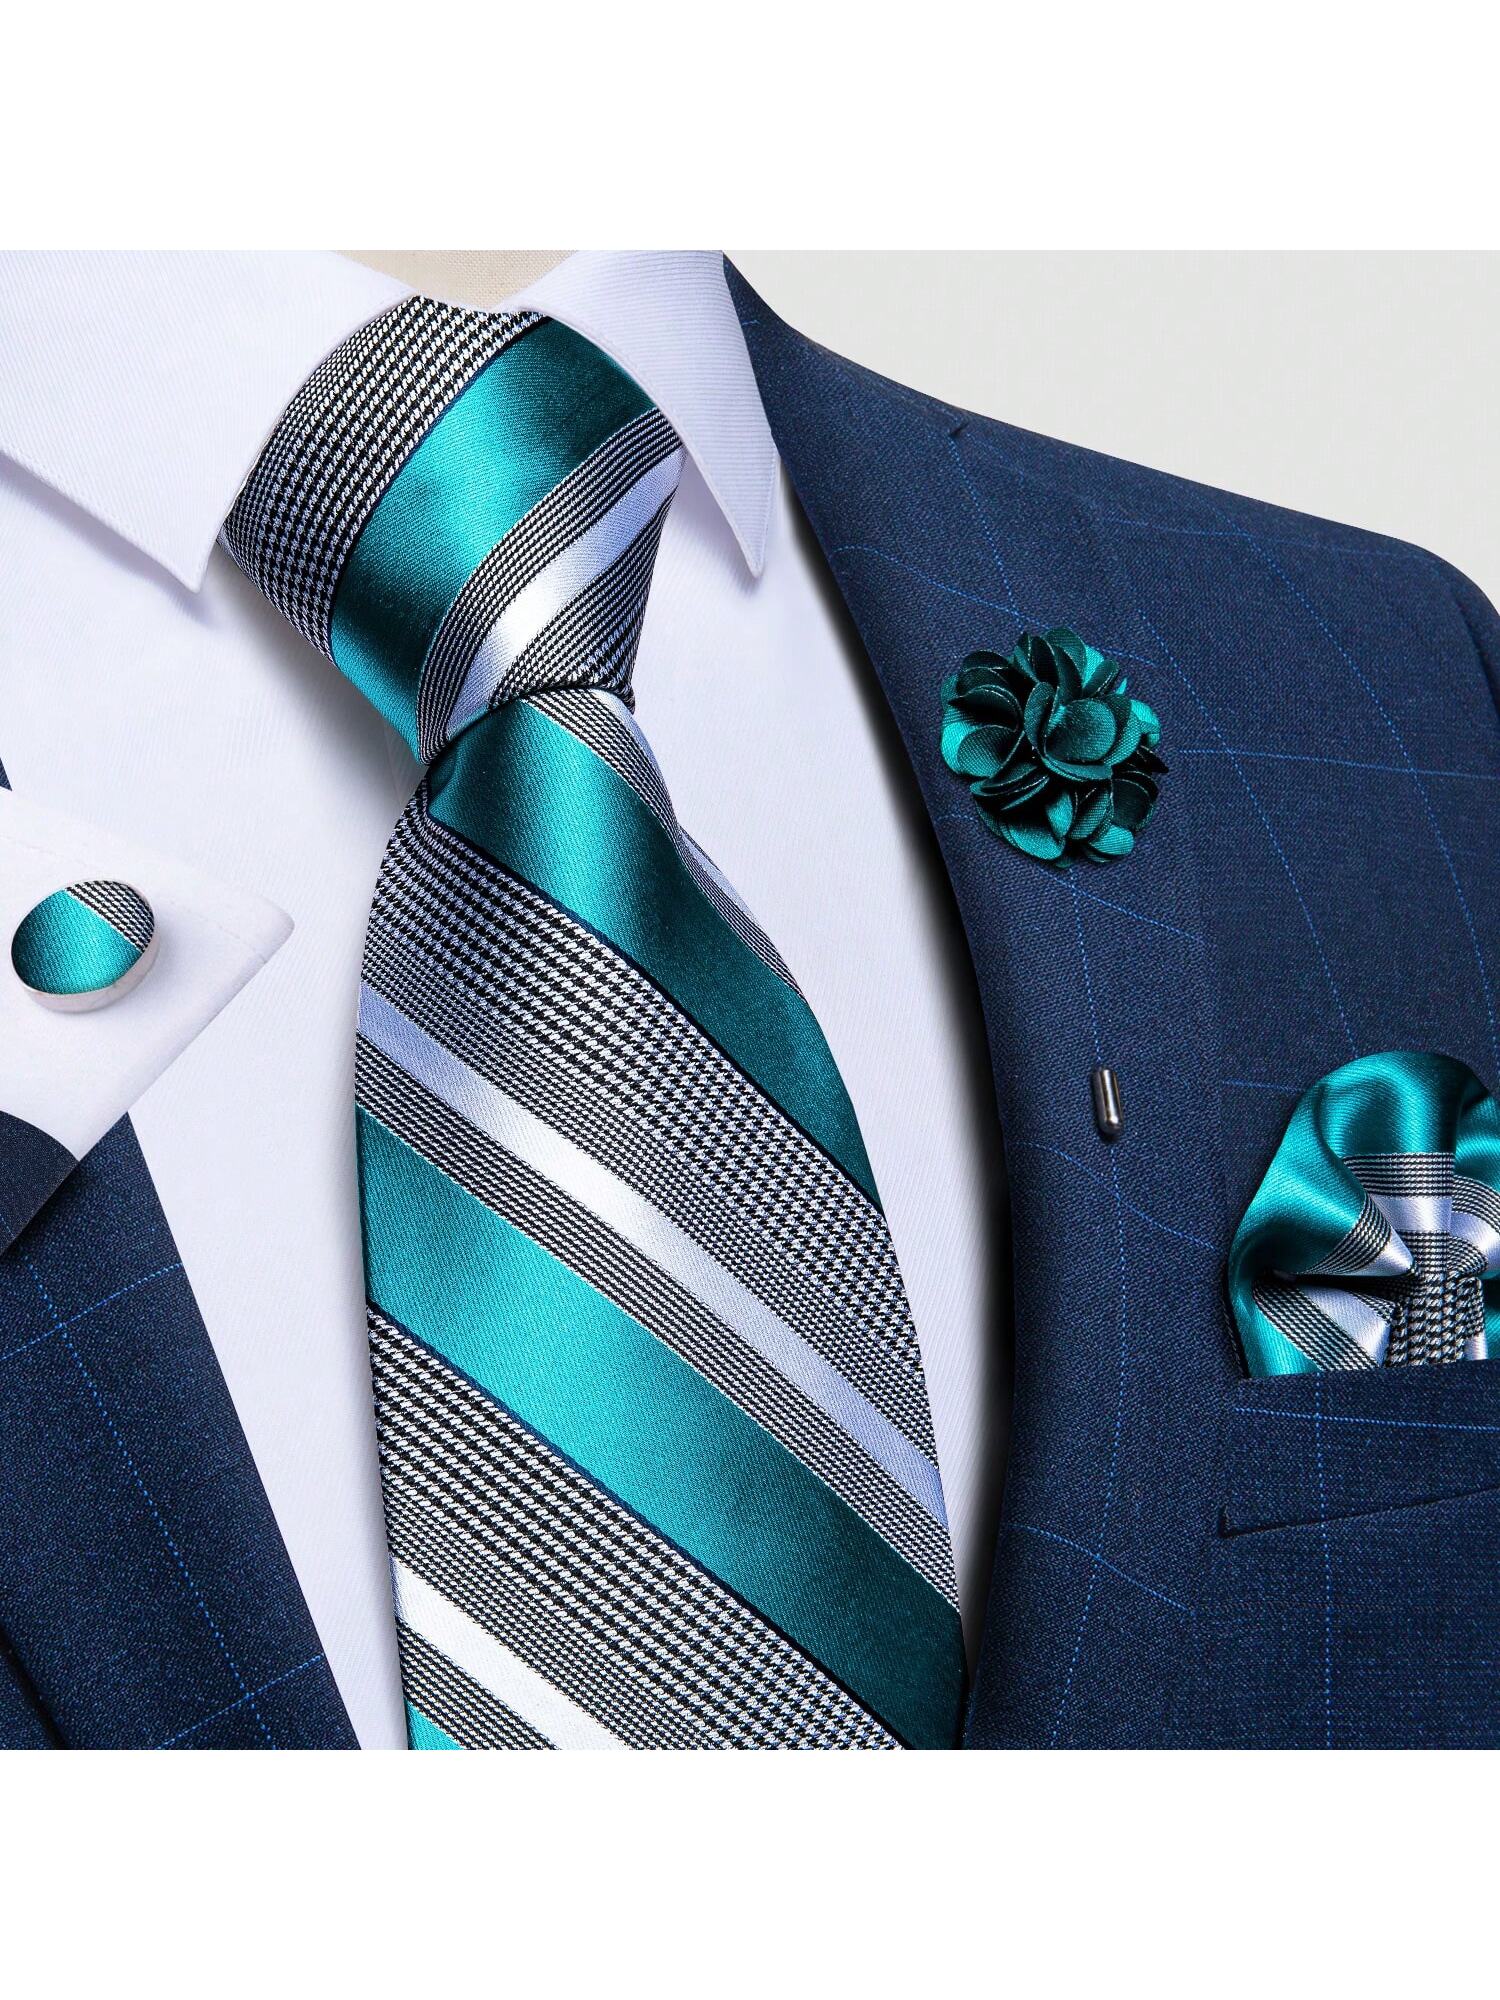 DiBanGu мужские галстуки, зеленый модные мужские трикотажные галстуки красочные новый 6 см узкий ширина трикотажные узкие галстуки для свадьбы мужские галстуки галстук